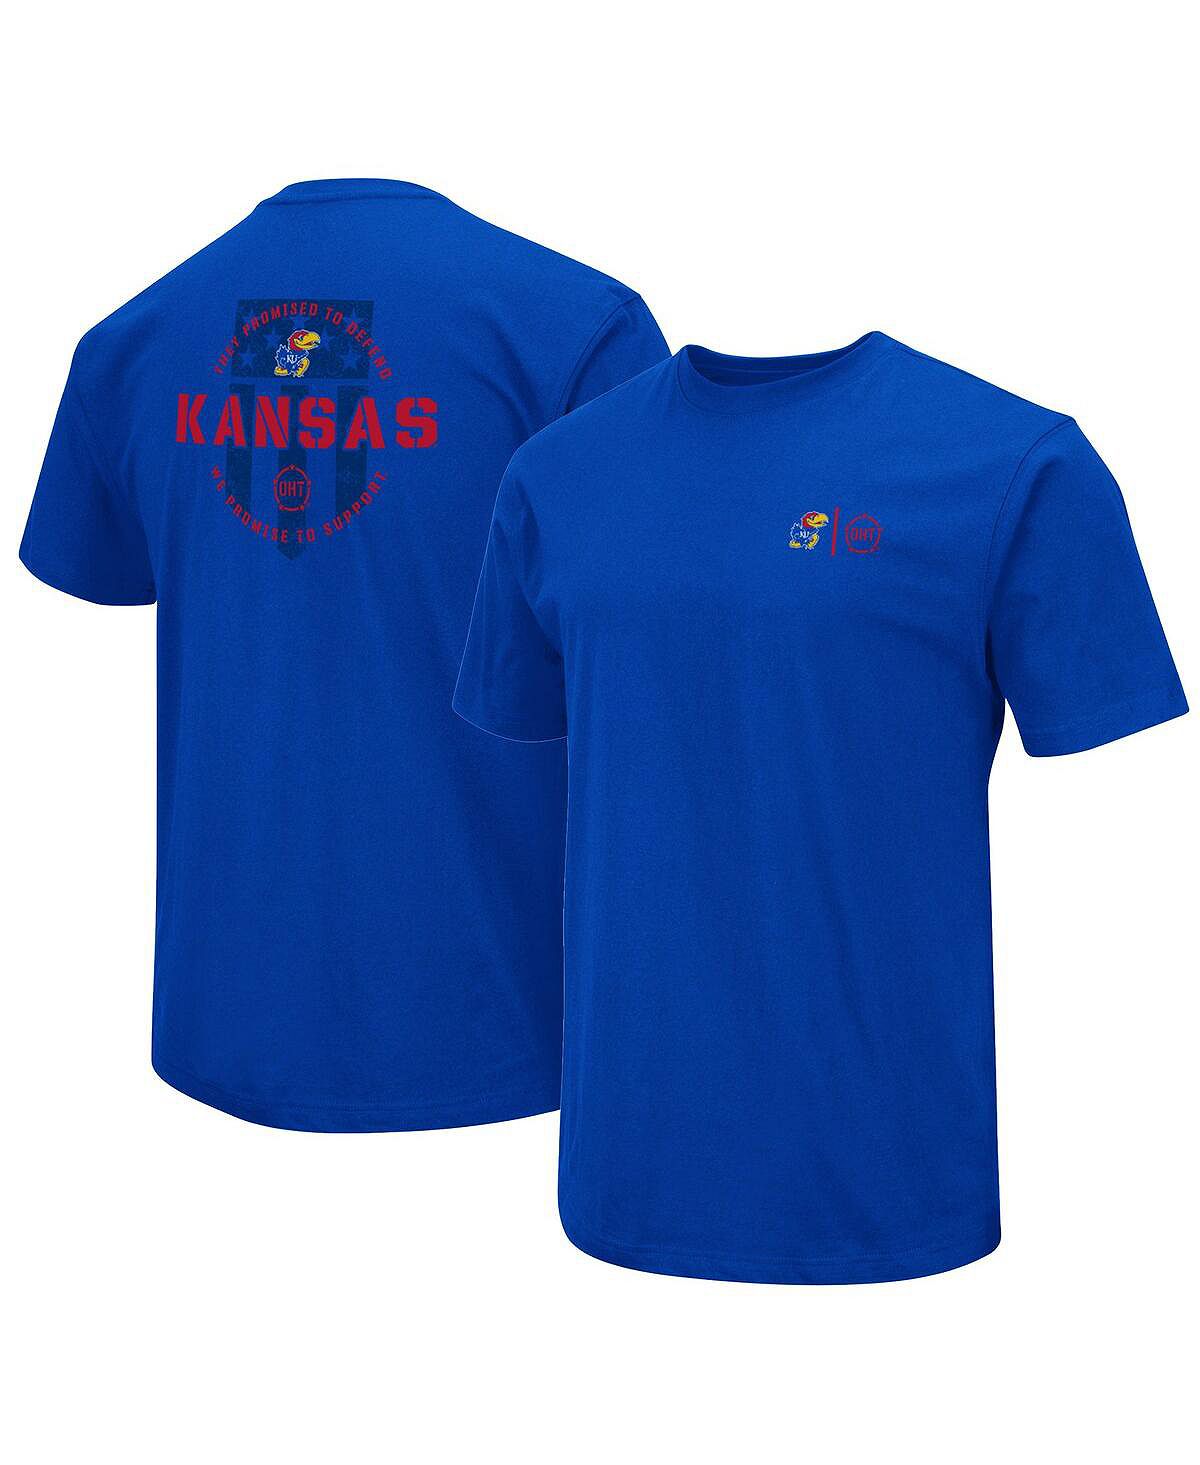 Мужская футболка Royal Kansas Jayhawks OHT в военном стиле с признательностью Colosseum канзас